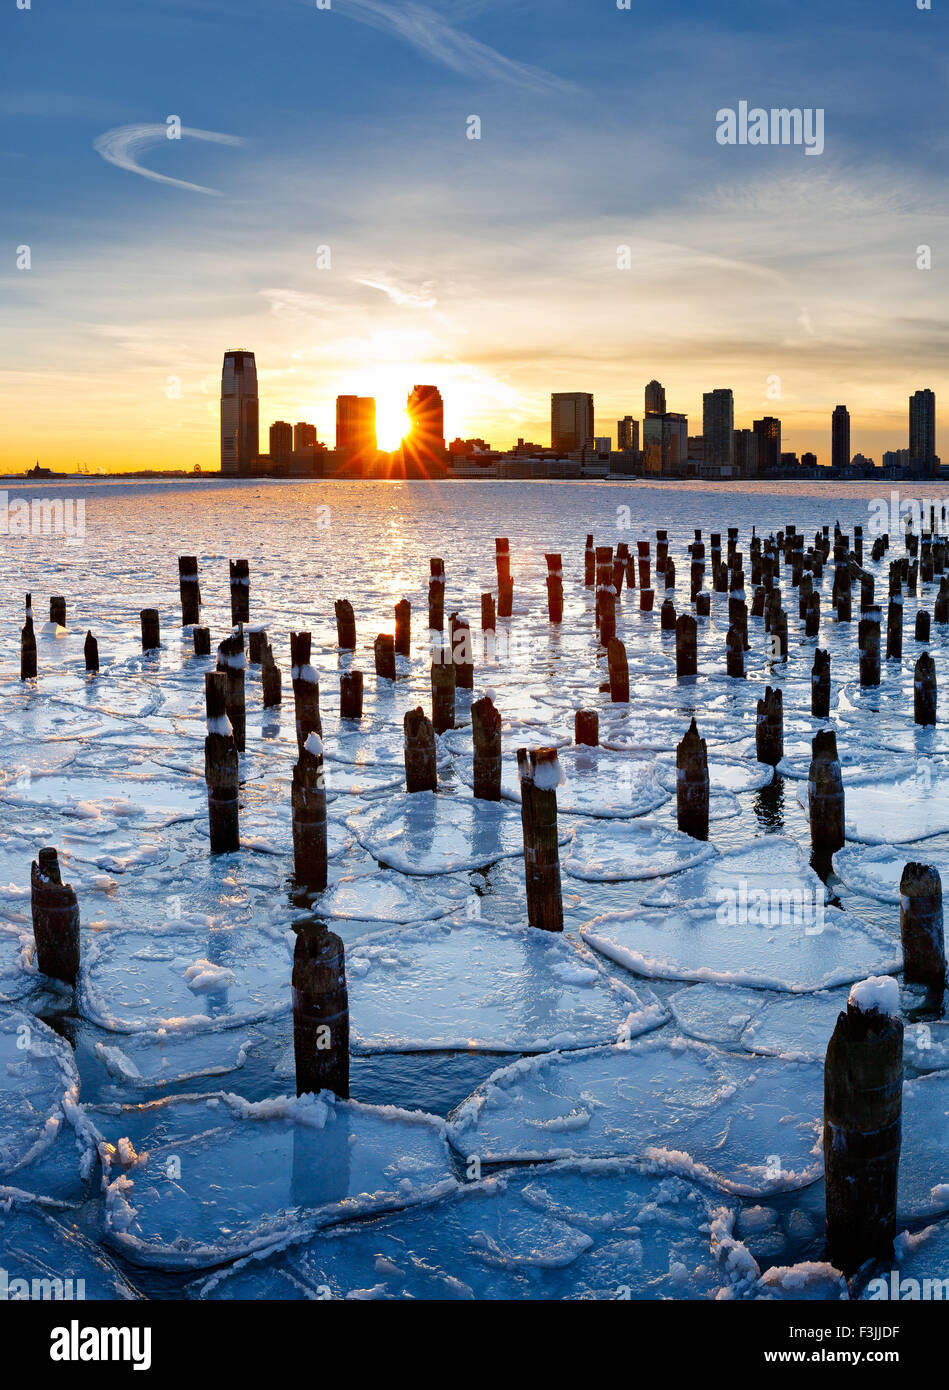 Pieux en bois de New York old pier qui sort à travers la glace, sur la Rivière Hudson au coucher du soleil avec des bâtiments de Jersey City Banque D'Images